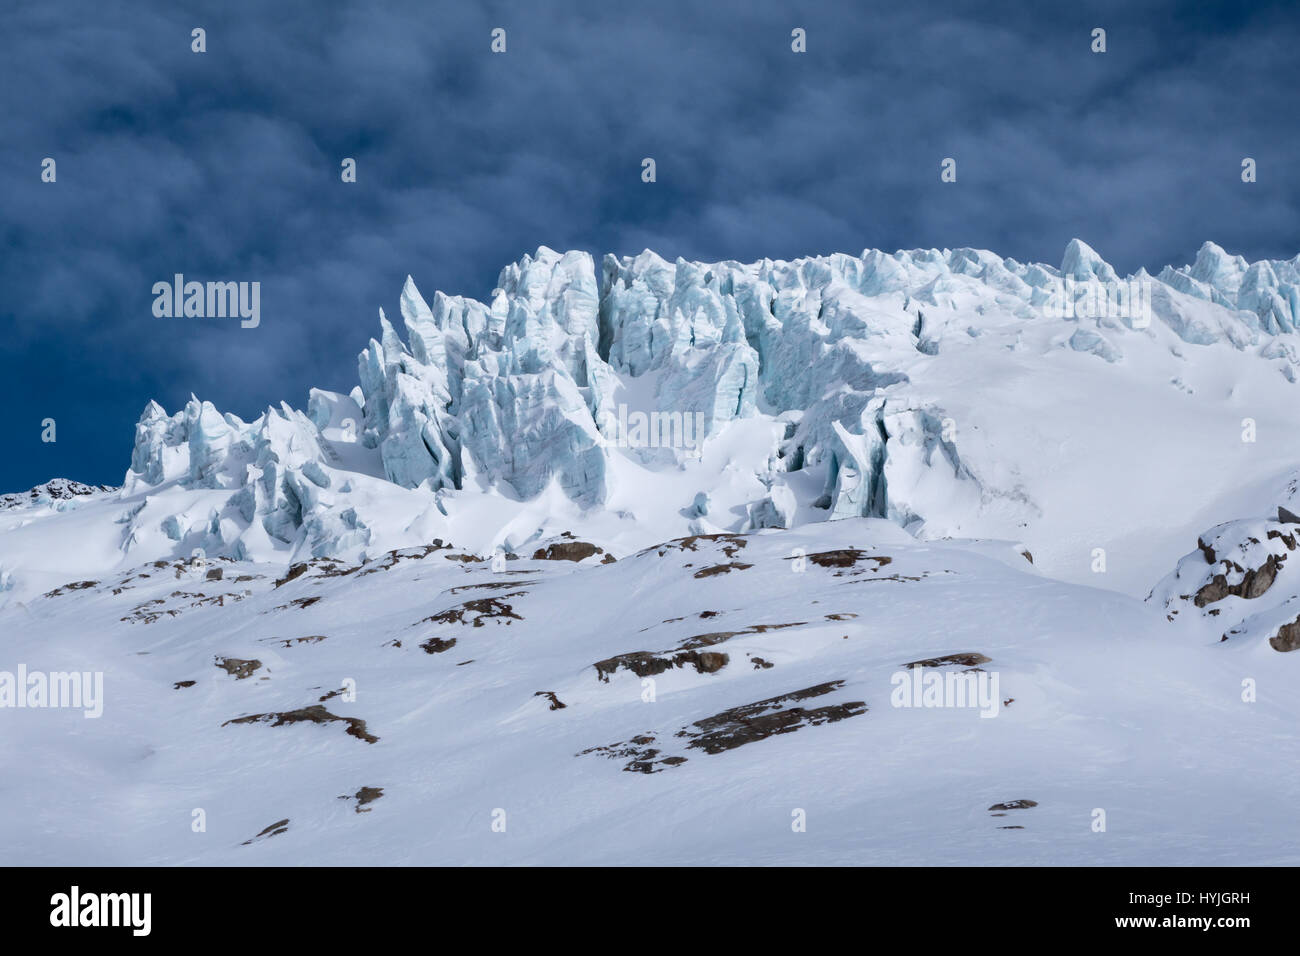 Detalle del Glaciar du Tour con resquicios bloques de hielo grietas que sobresalen del paisaje de invierno iluminado por la luz solar a través de las nubes en los Alpes hacia atrás Foto de stock